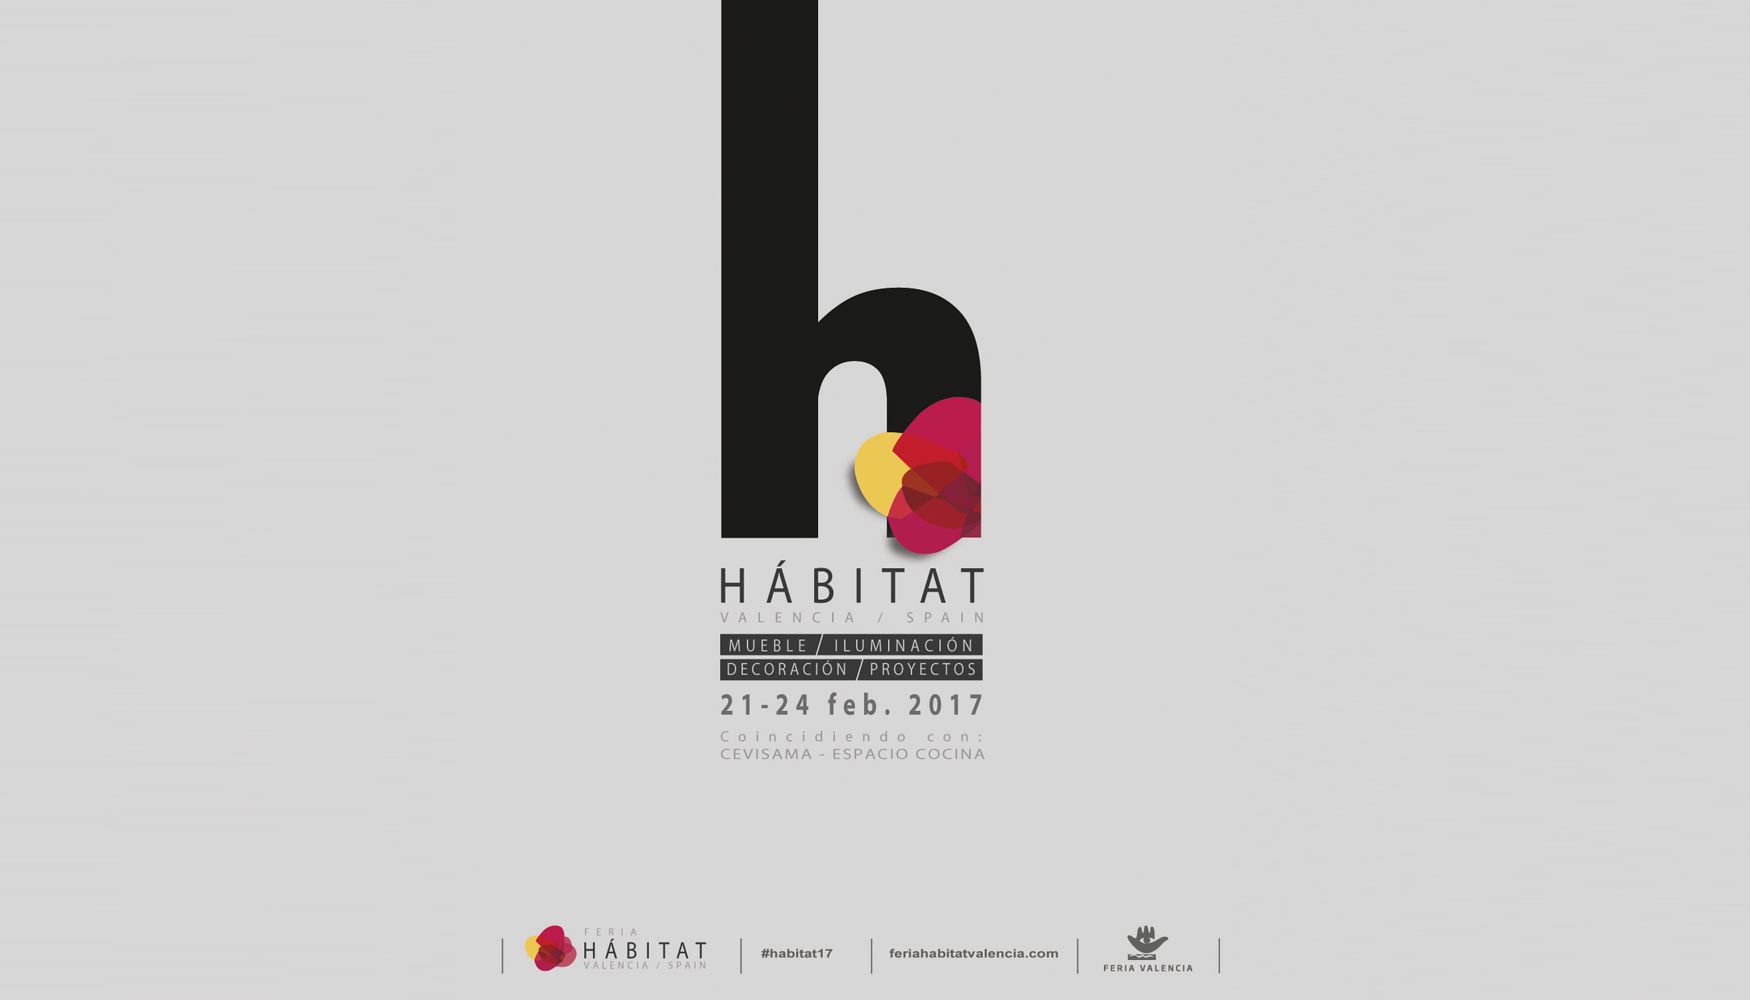 Feria Hbitat Valencia tendr lugar entre los prximos 21 y 24 de febrero de 2017